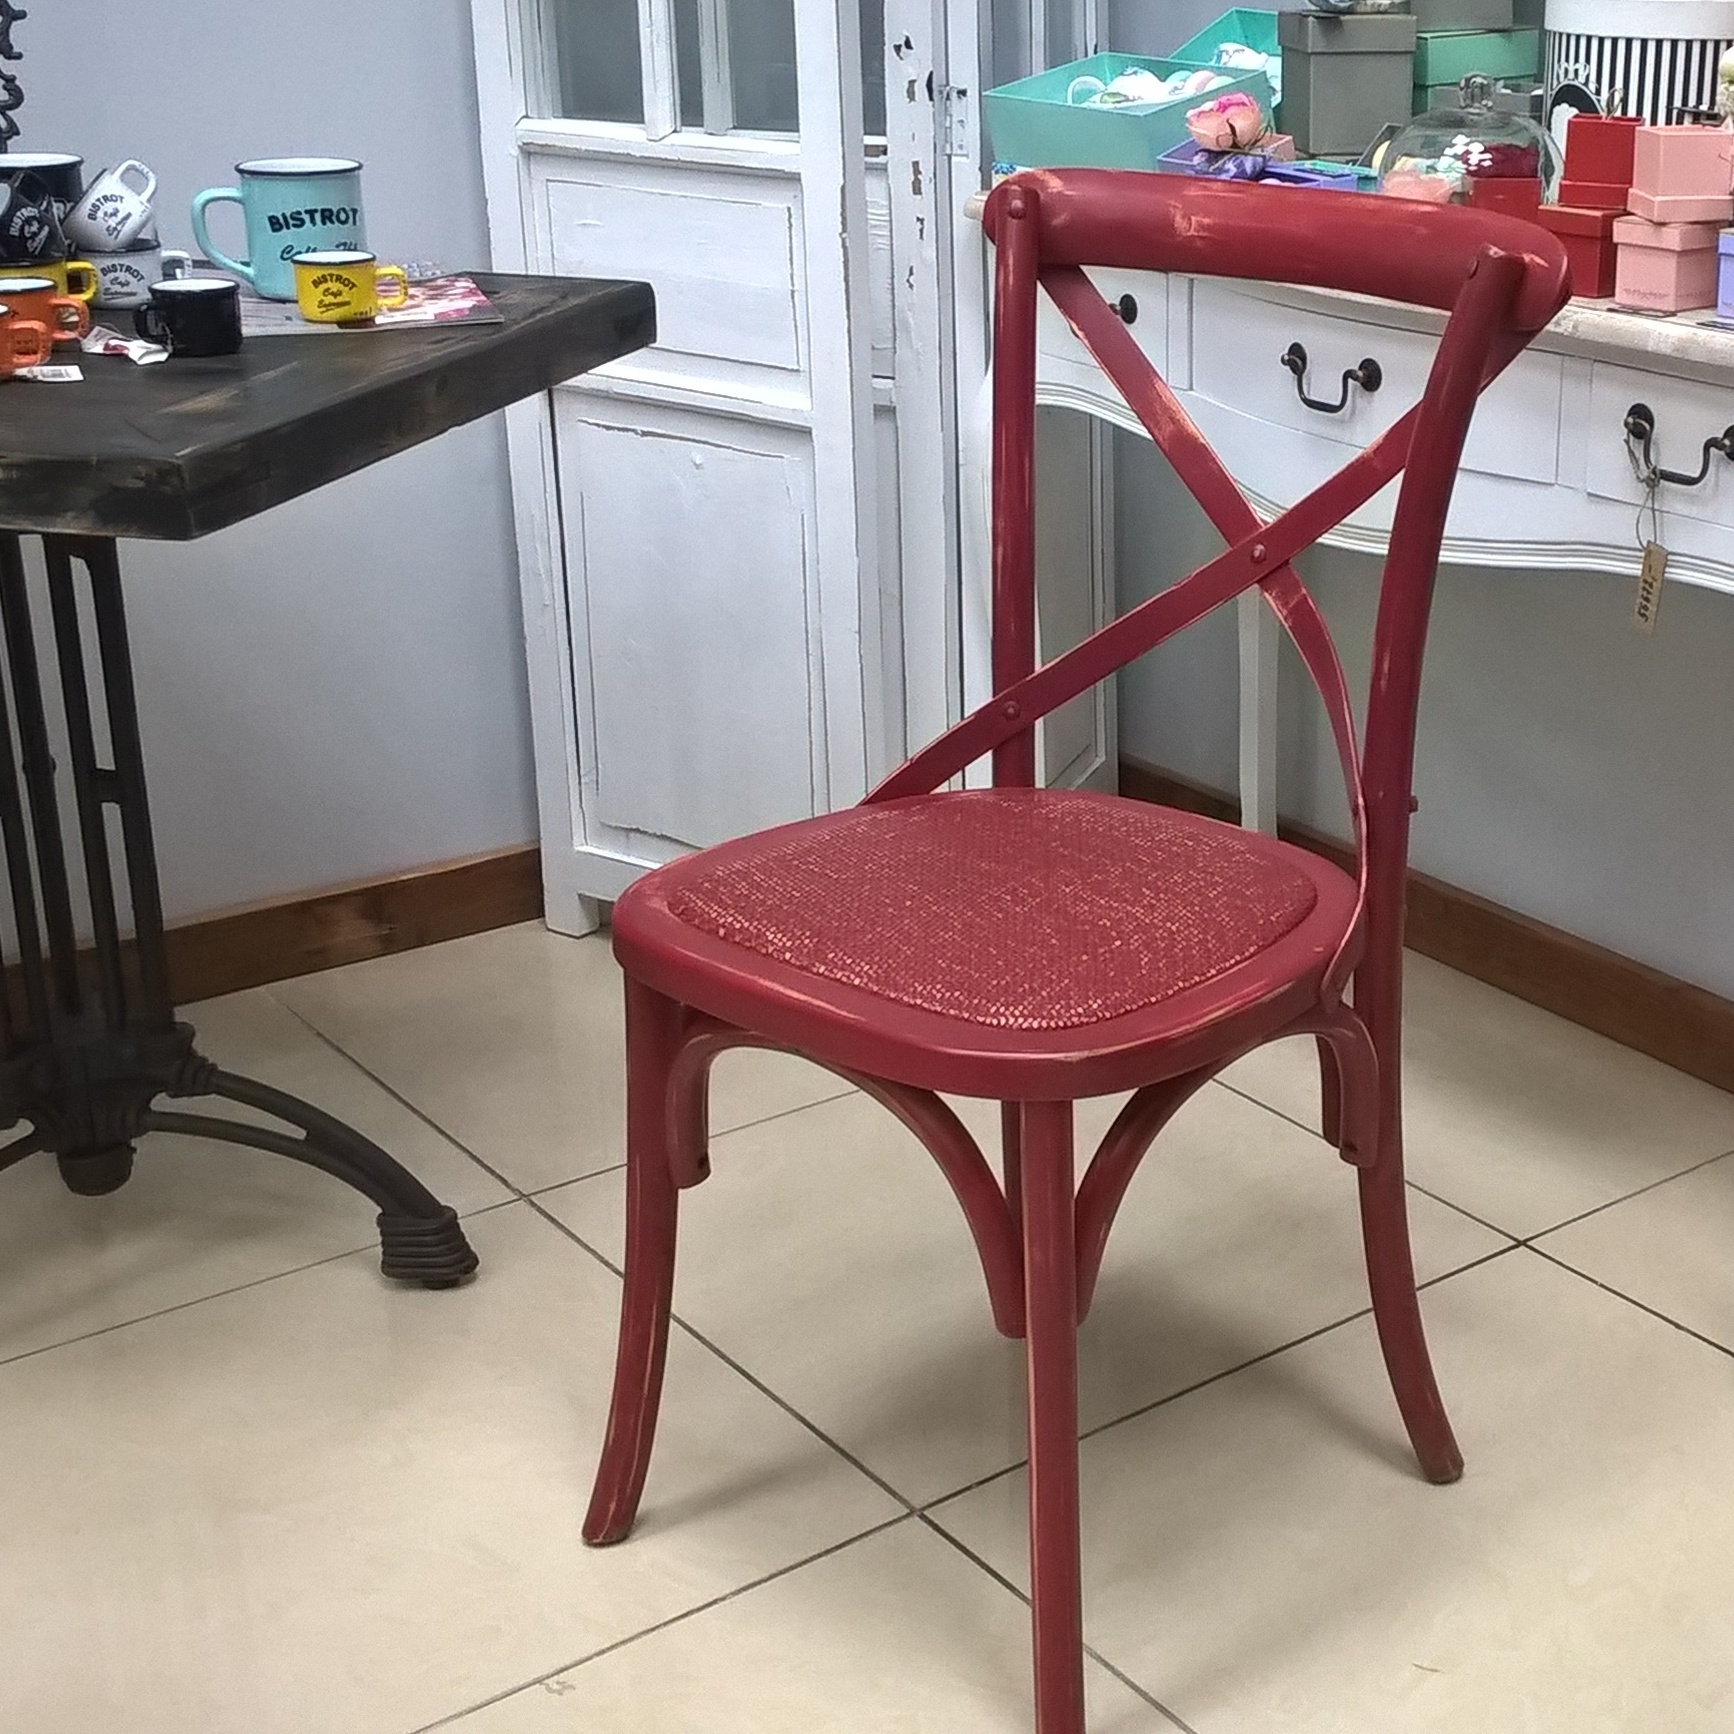   Berry Hills Винтажный стул (Мебель и предметы интерьера)